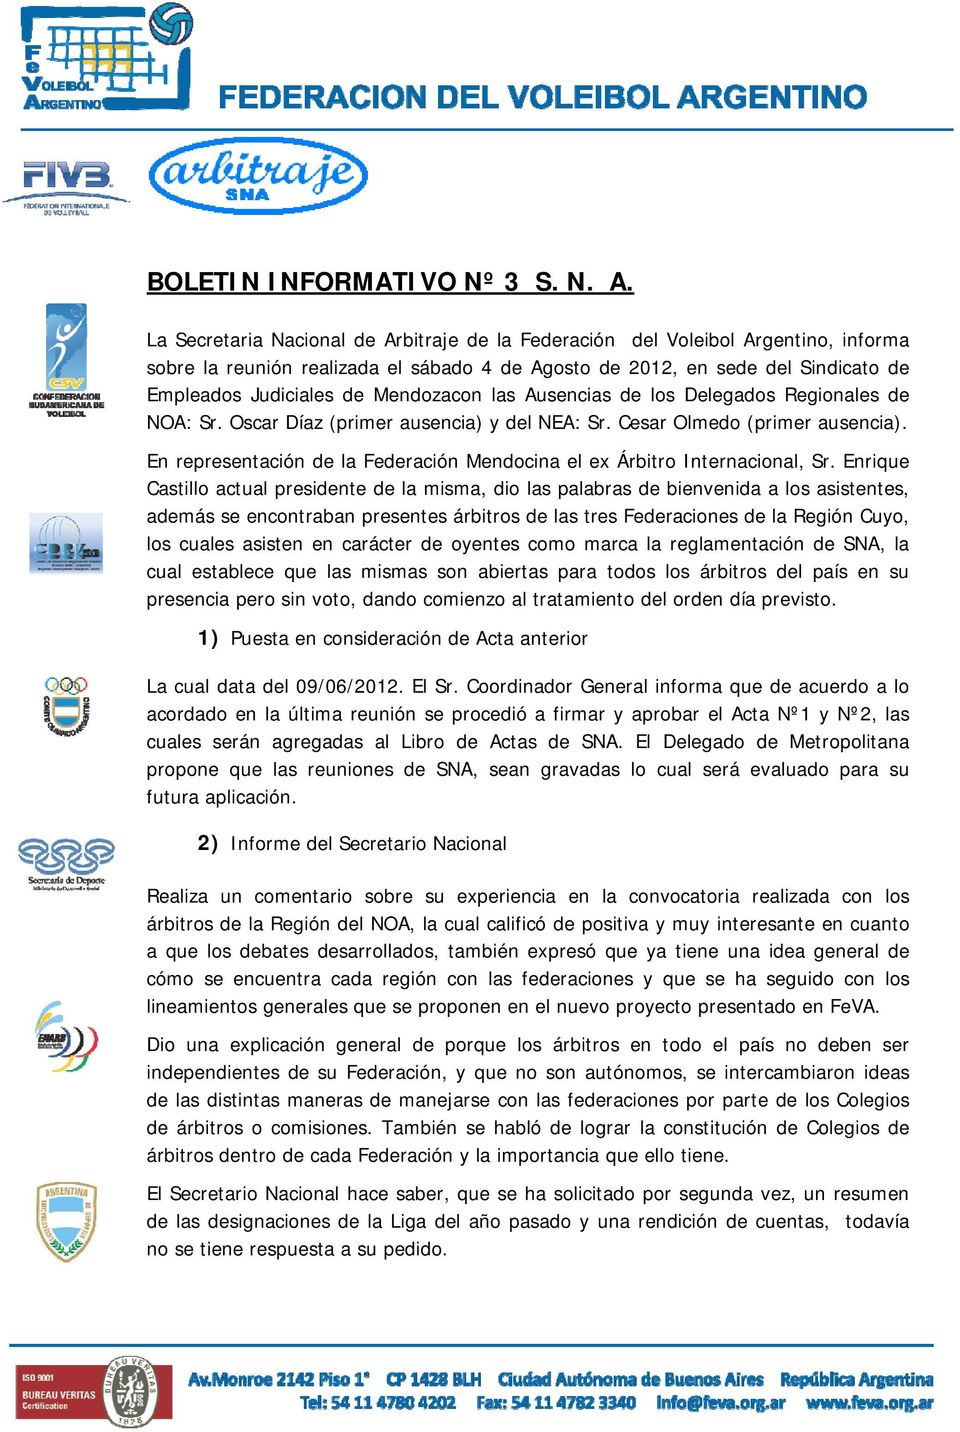 Mendozacon las Ausencias de los Delegados Regionales de NOA: Sr. Oscar Díaz (primer ausencia) y del NEA: Sr. Cesar Olmedo (primer ausencia).